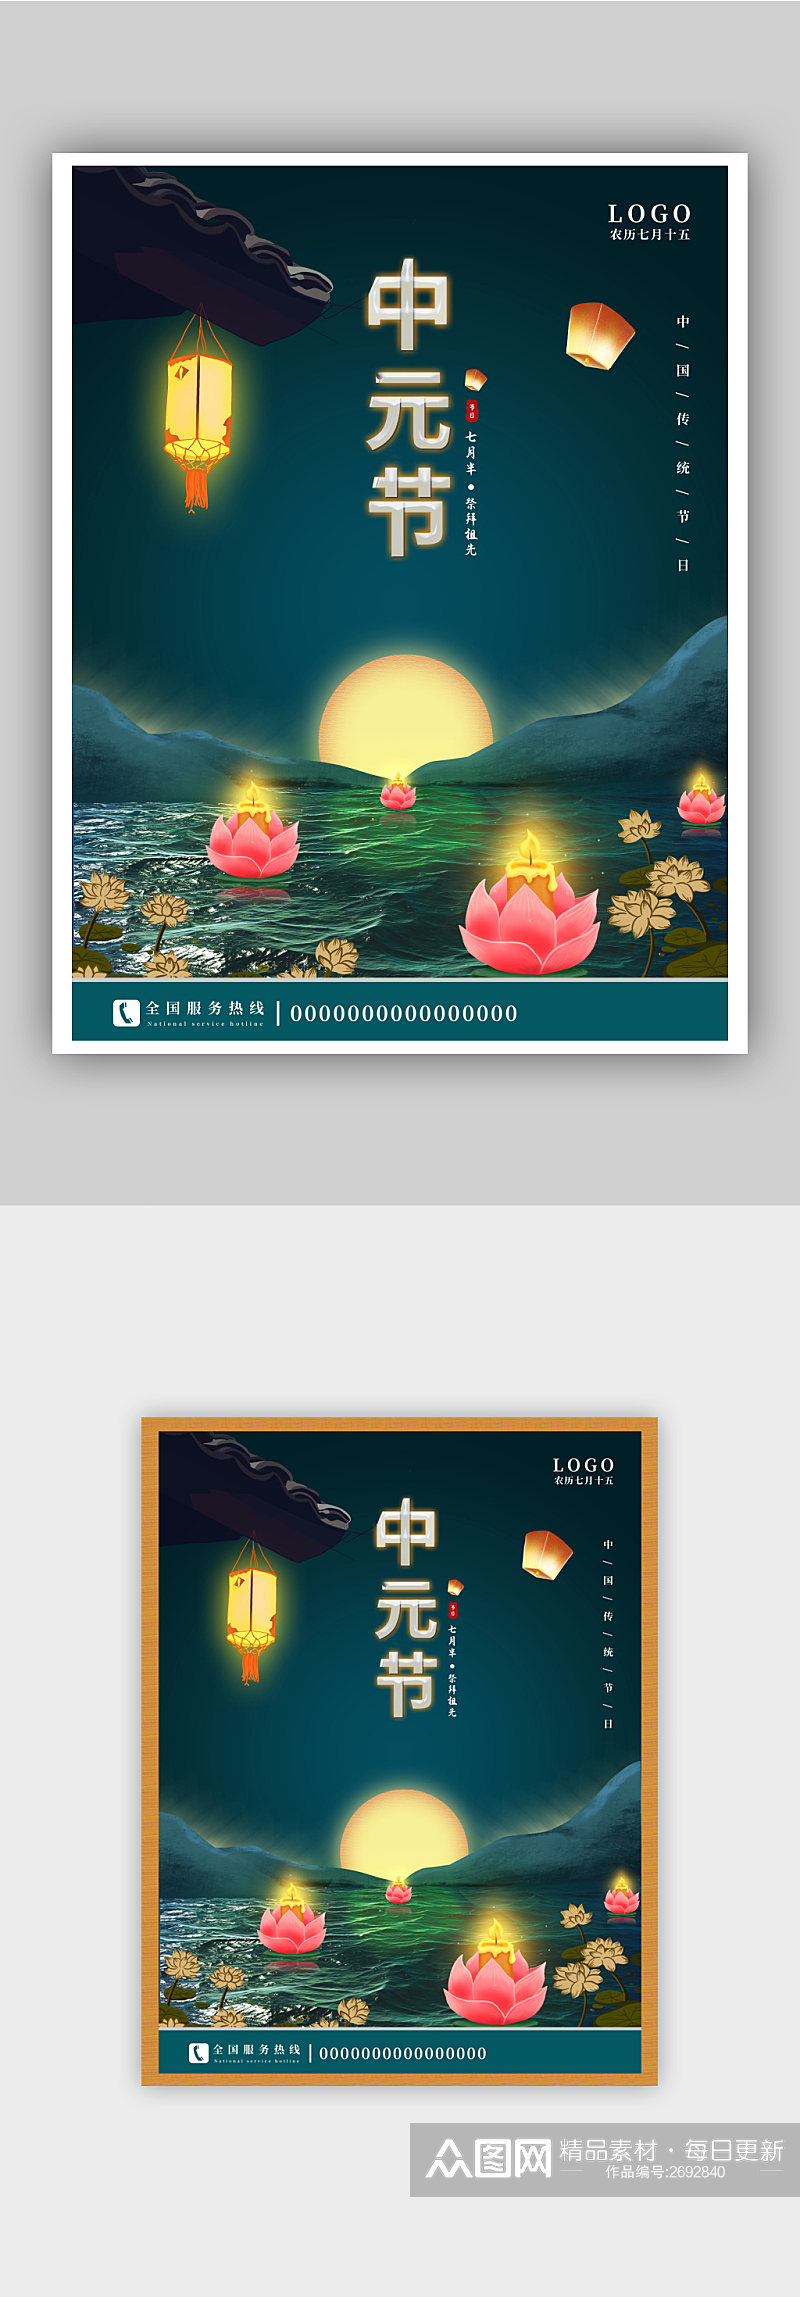 简约传统文化祭祖七月半中元节宣传节日海报素材